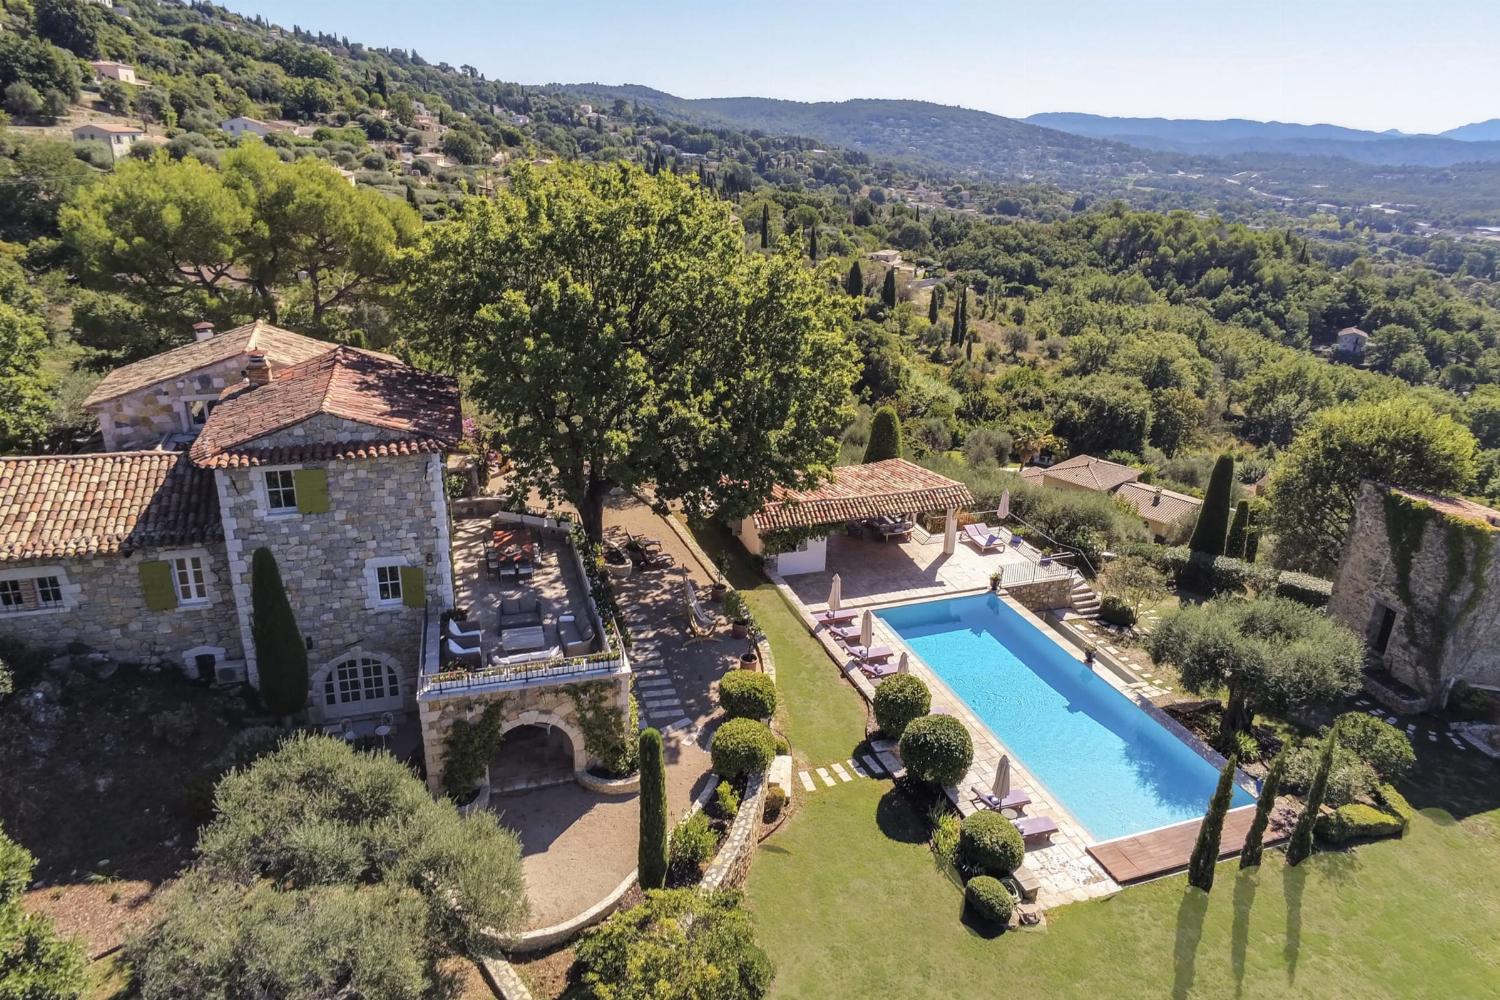 Location de vacances en Provence avec piscine privée chauffée